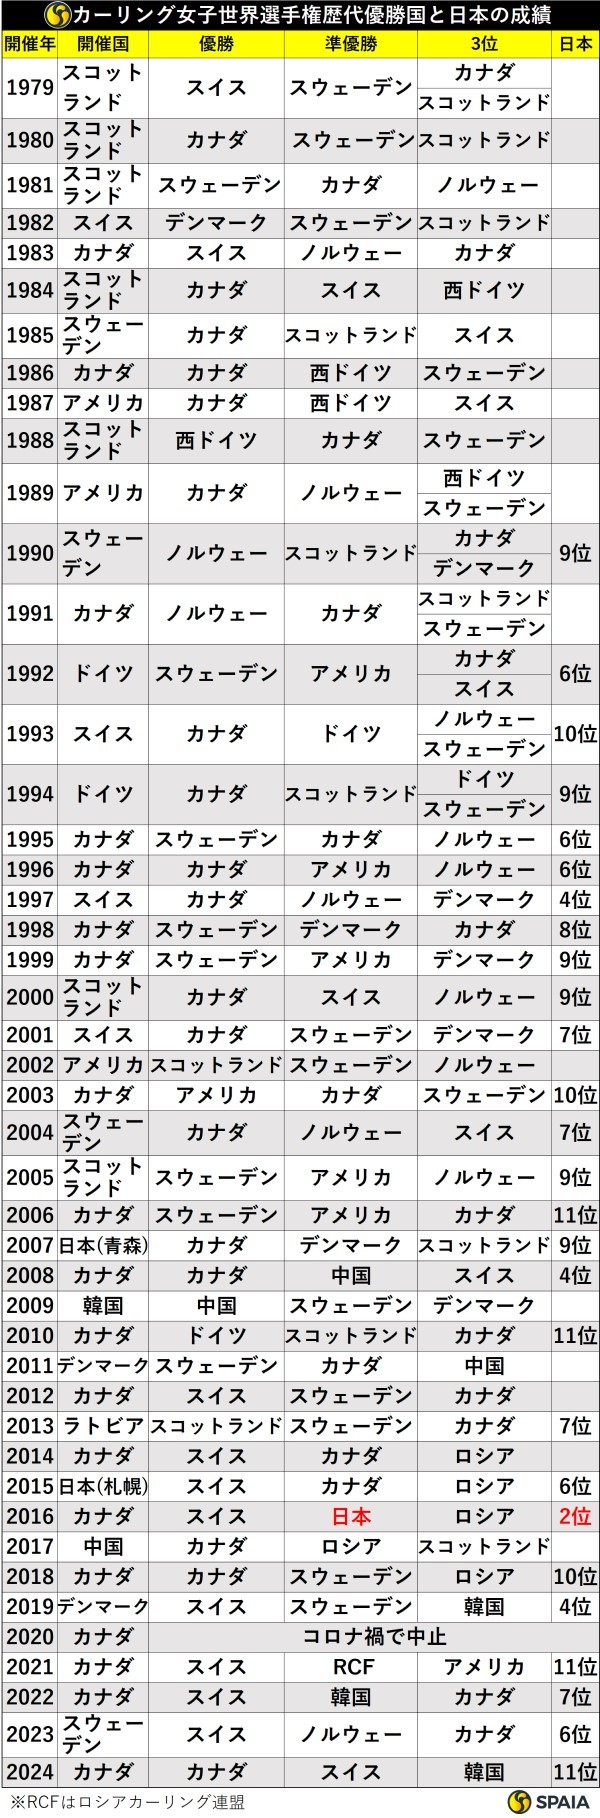 カーリング女子世界選手権歴代優勝国と日本の成績